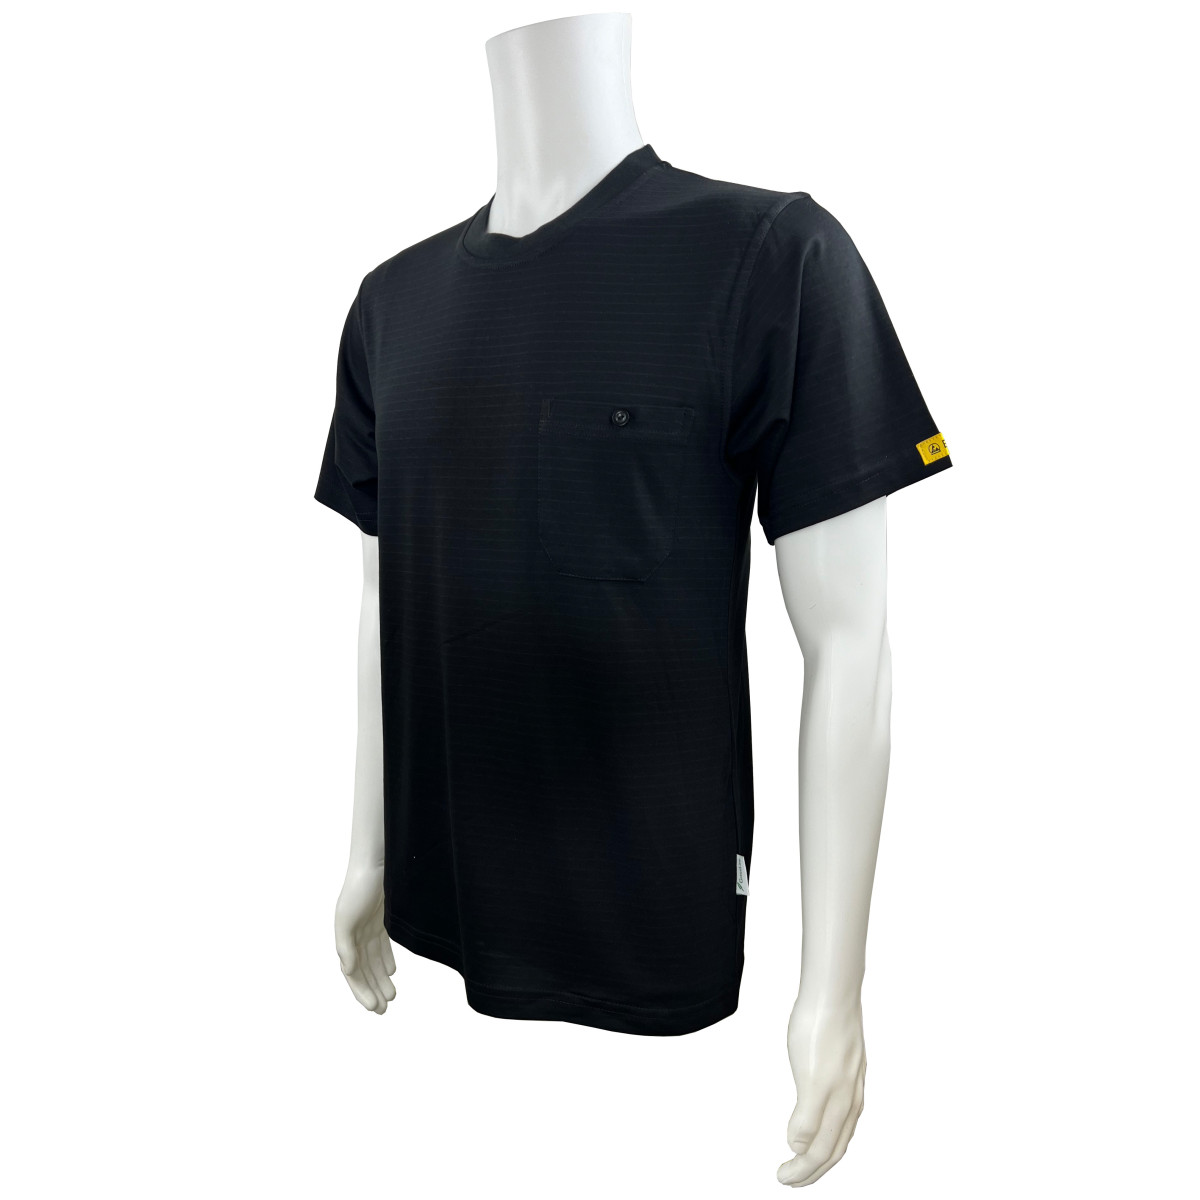 KETEX® T-Shirt black